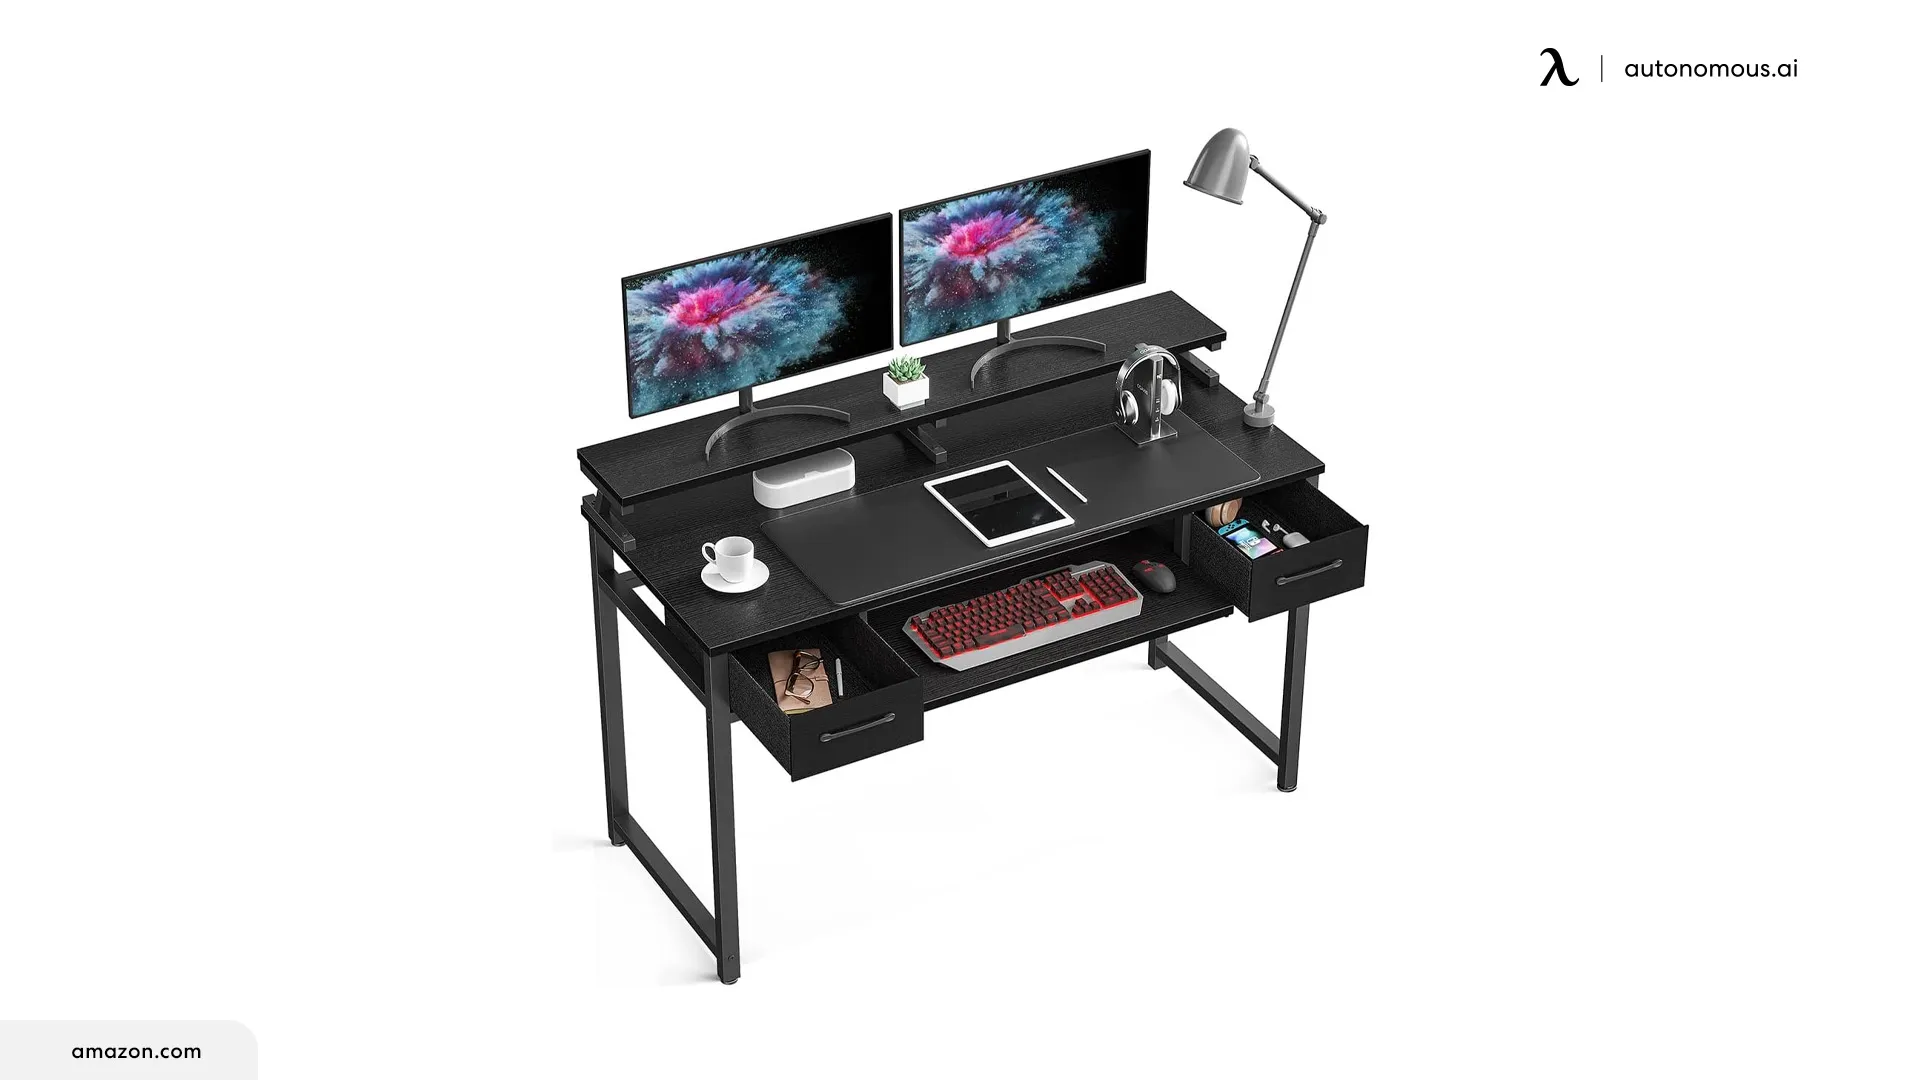 ODK Computer Desk